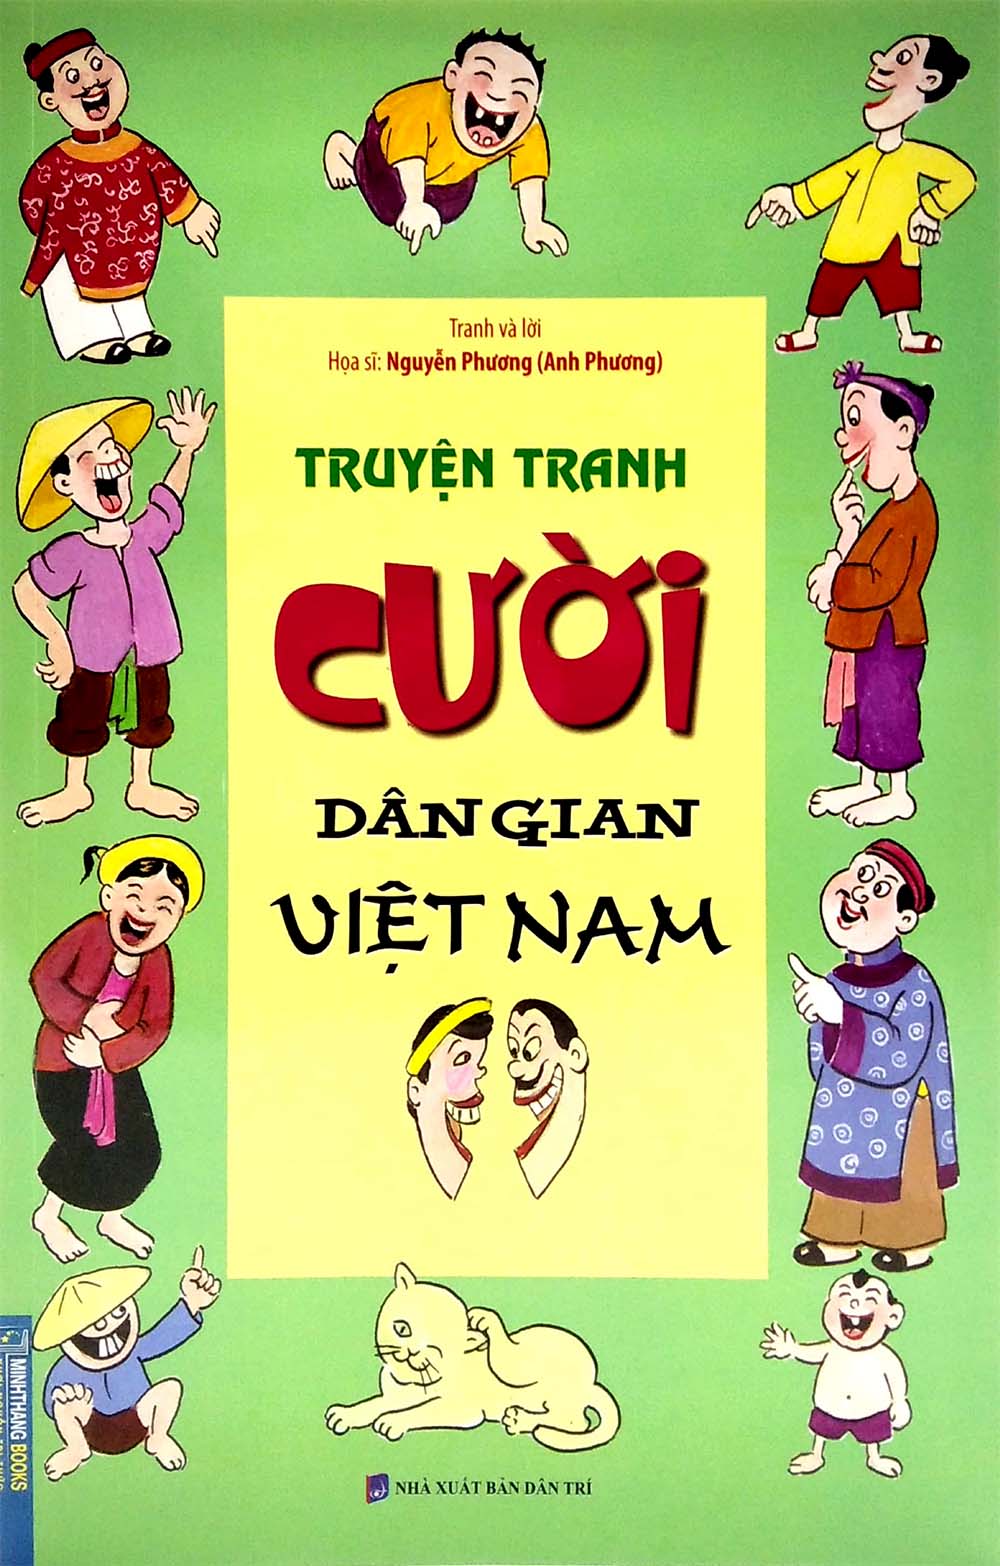 Truyện giành giật cười cợt dân gian ngoan Việt Nam